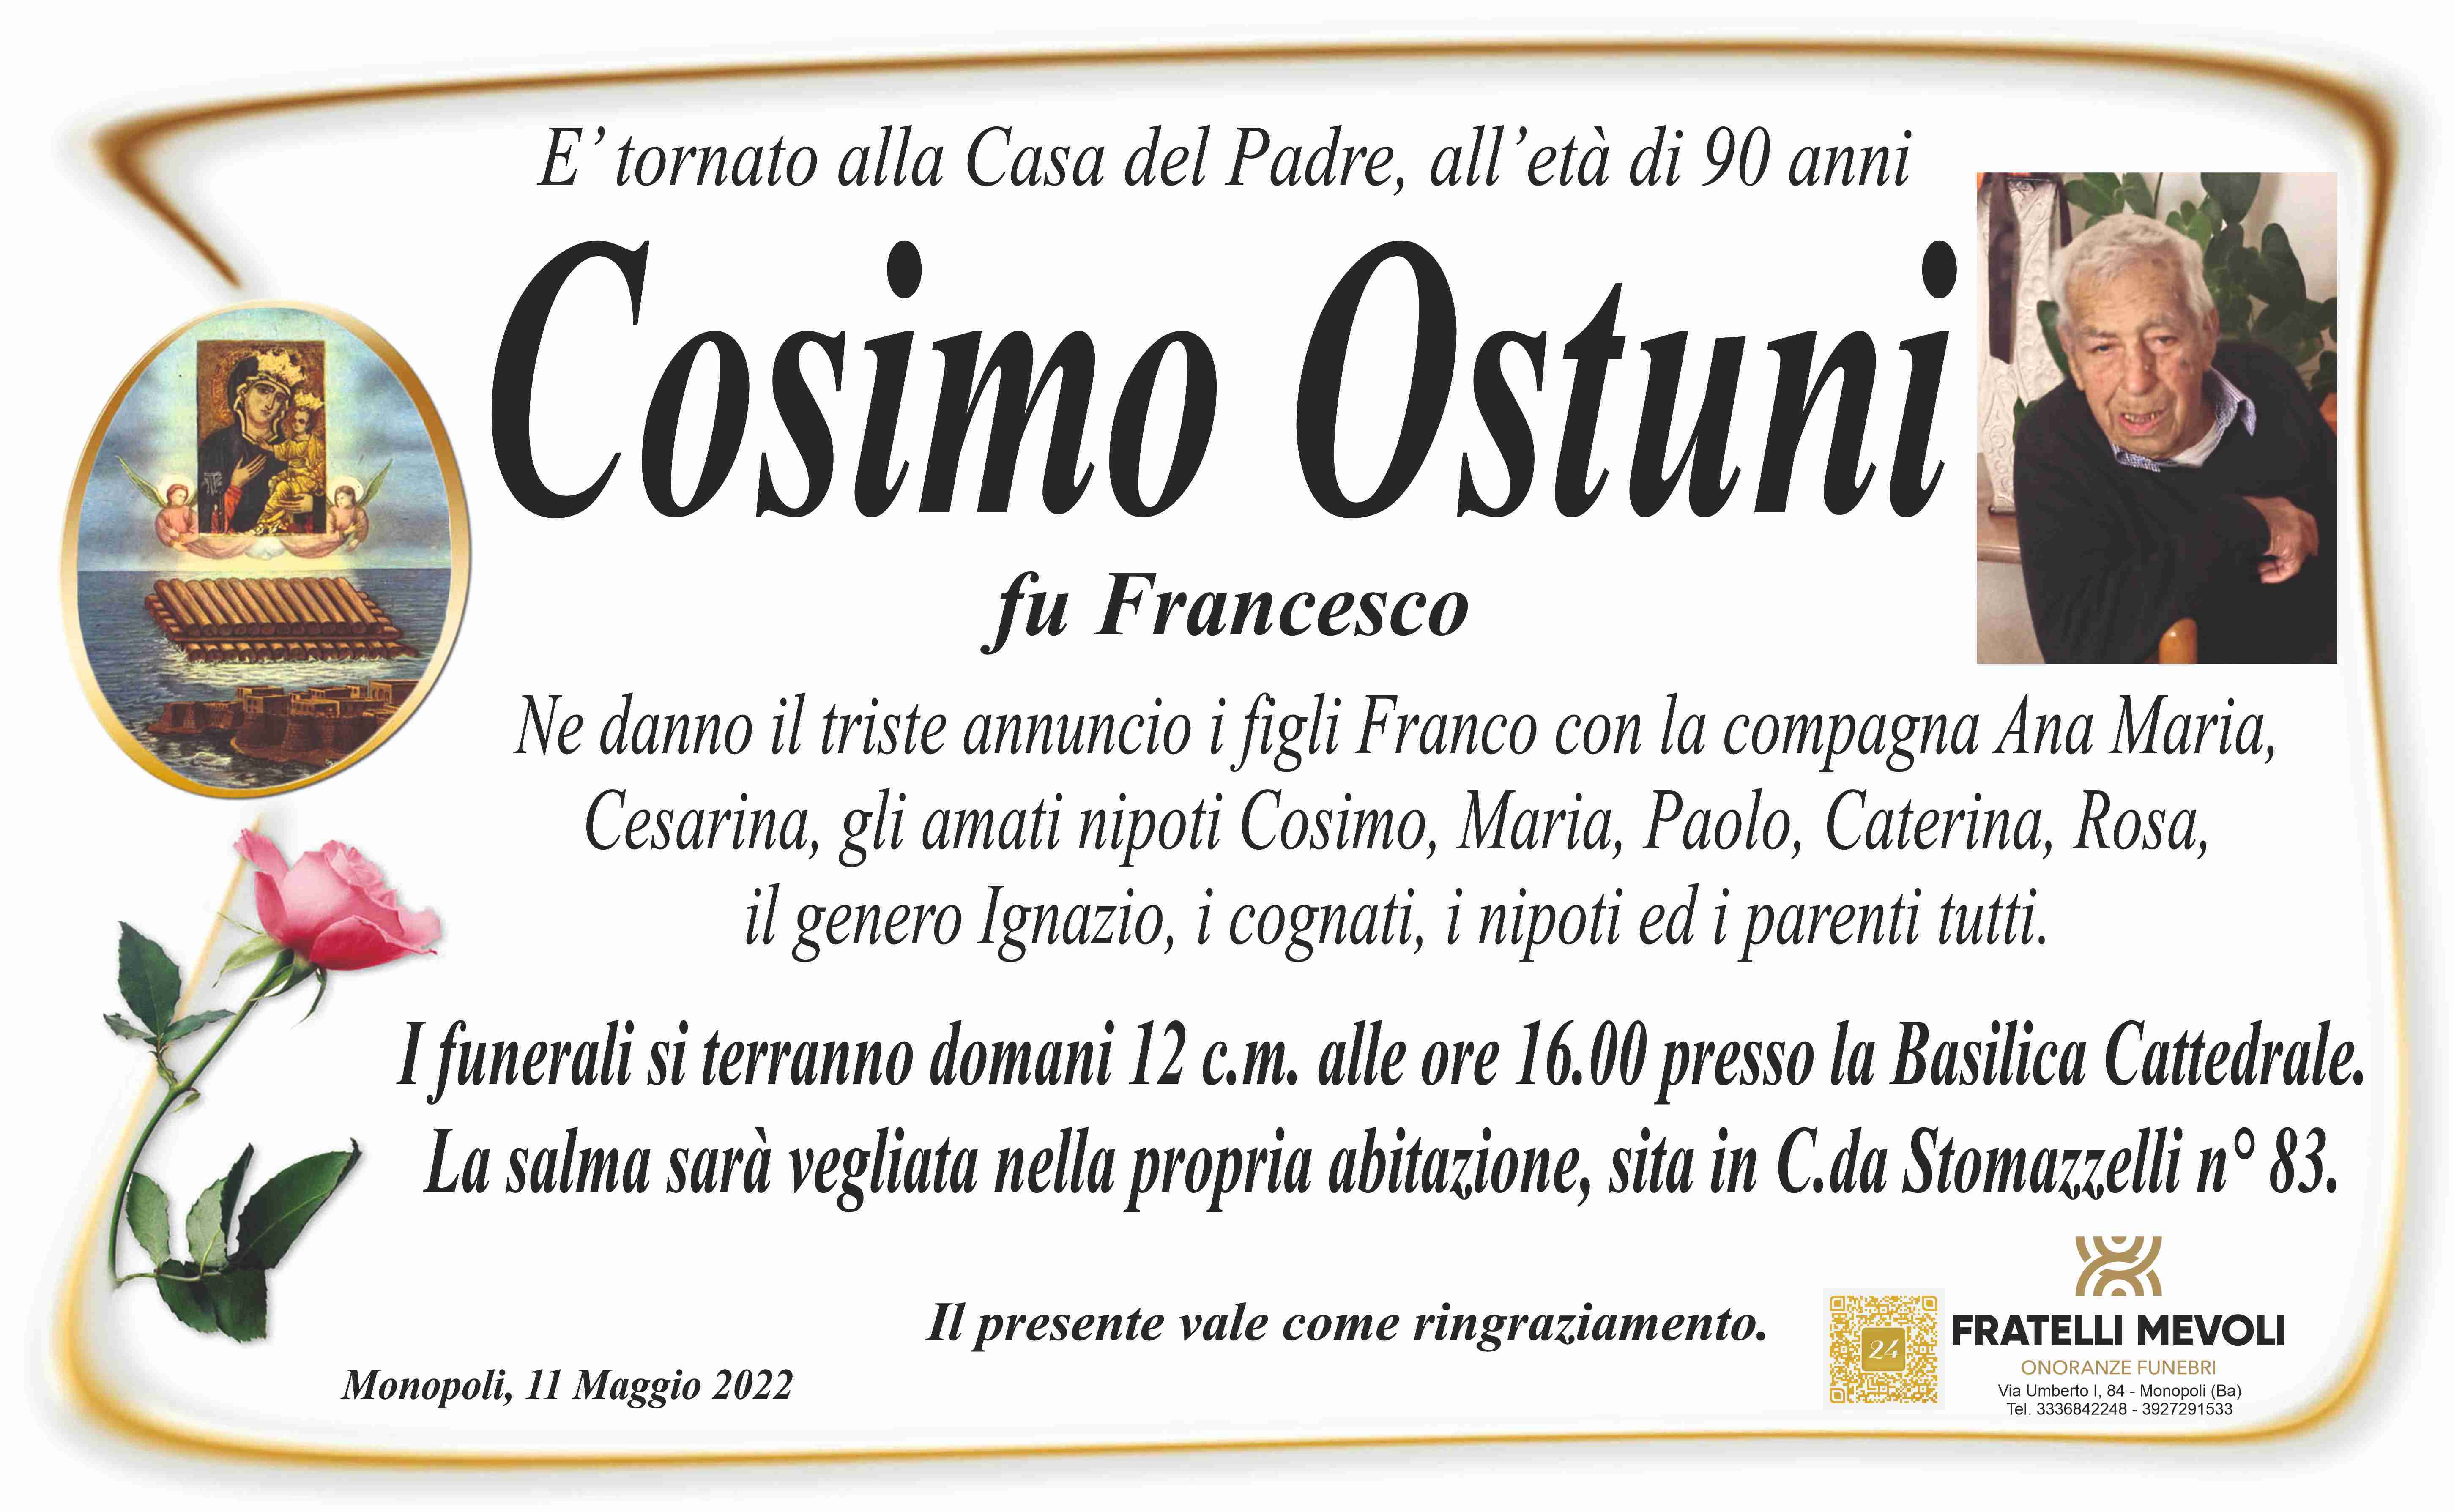 Cosimo Ostuni